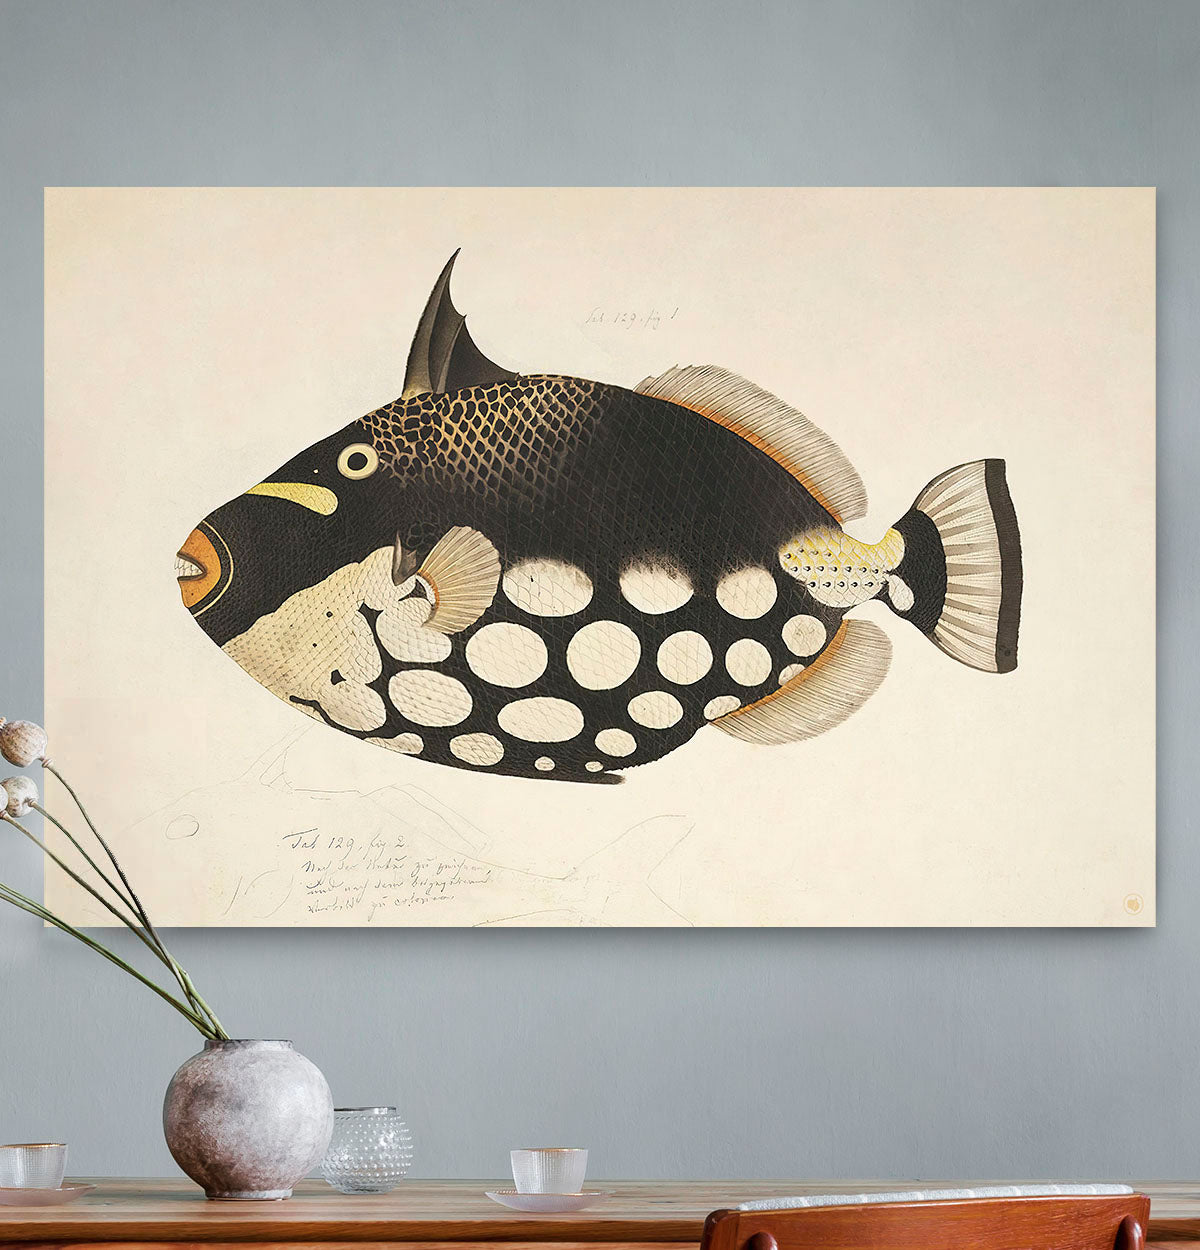 Schilderij met een zwart bruine vis tegen een grijze muur met een vaas er voor